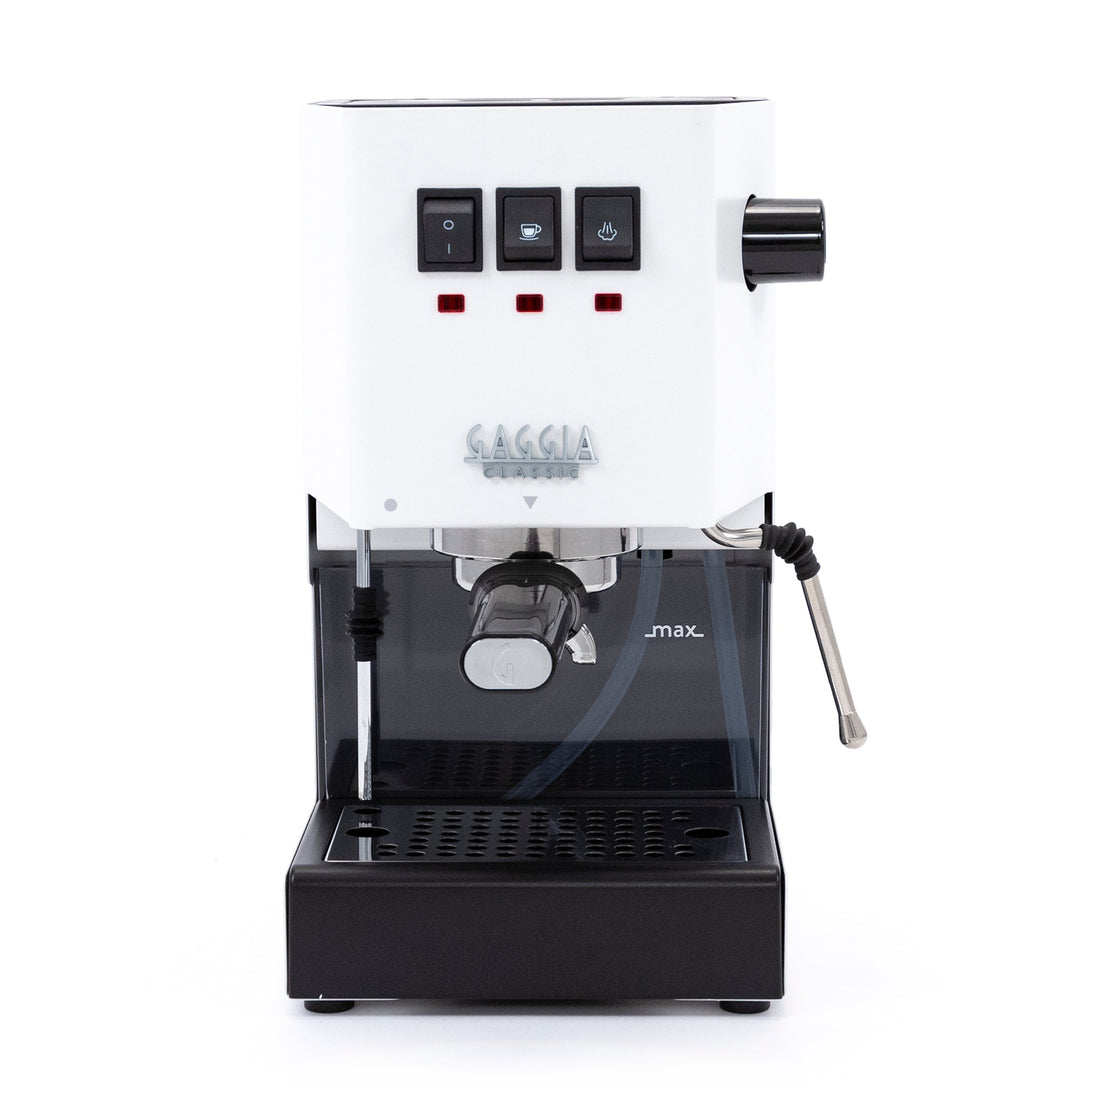 Gaggia Classic Evo Pro Espresso Machine in Polar White with Walnut